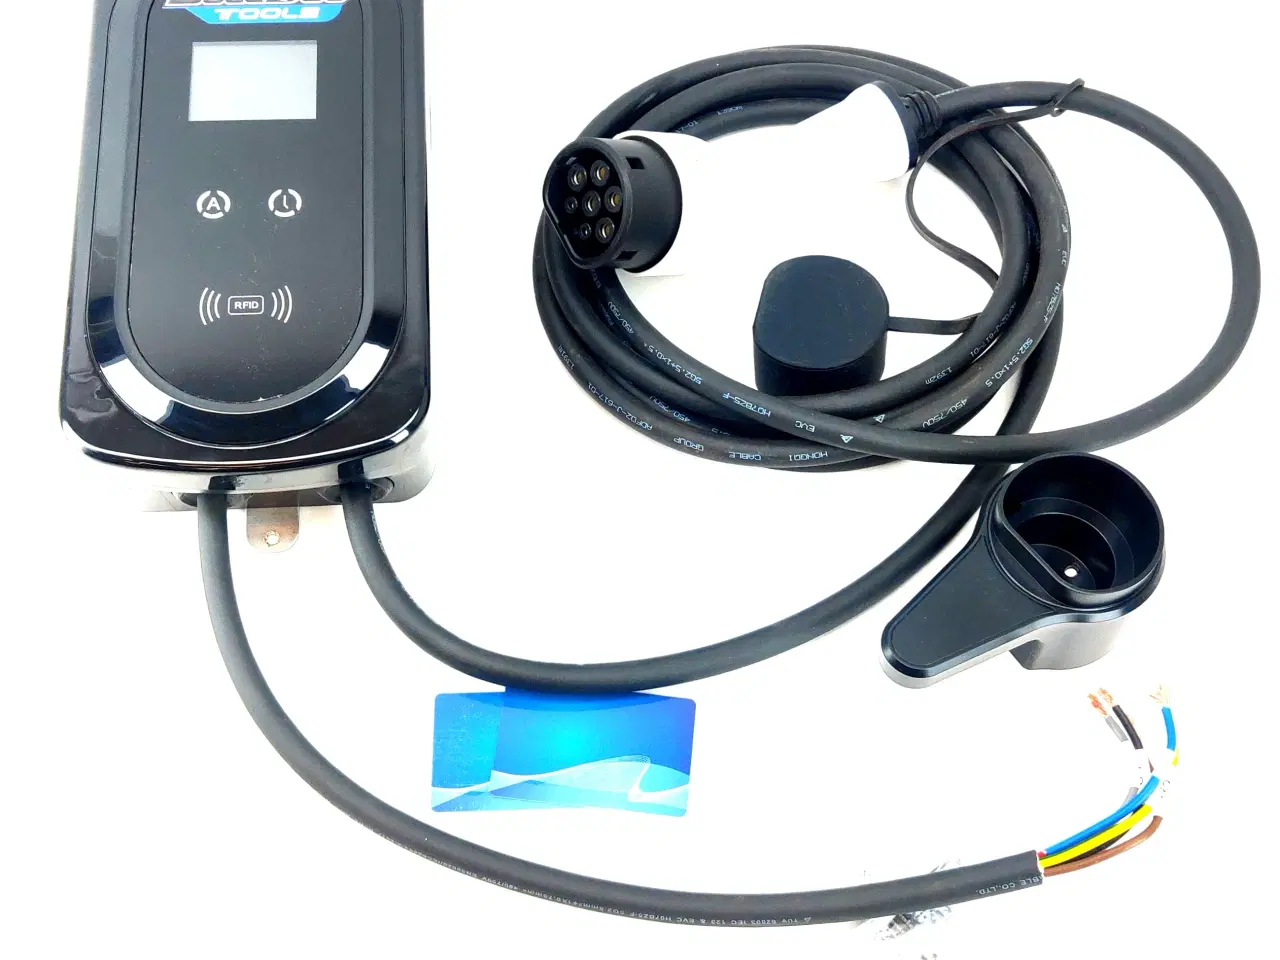 Billede 1 - Elbil oplader 8-16A med LCD display, RFID kort, app styring og 5 meter kabel